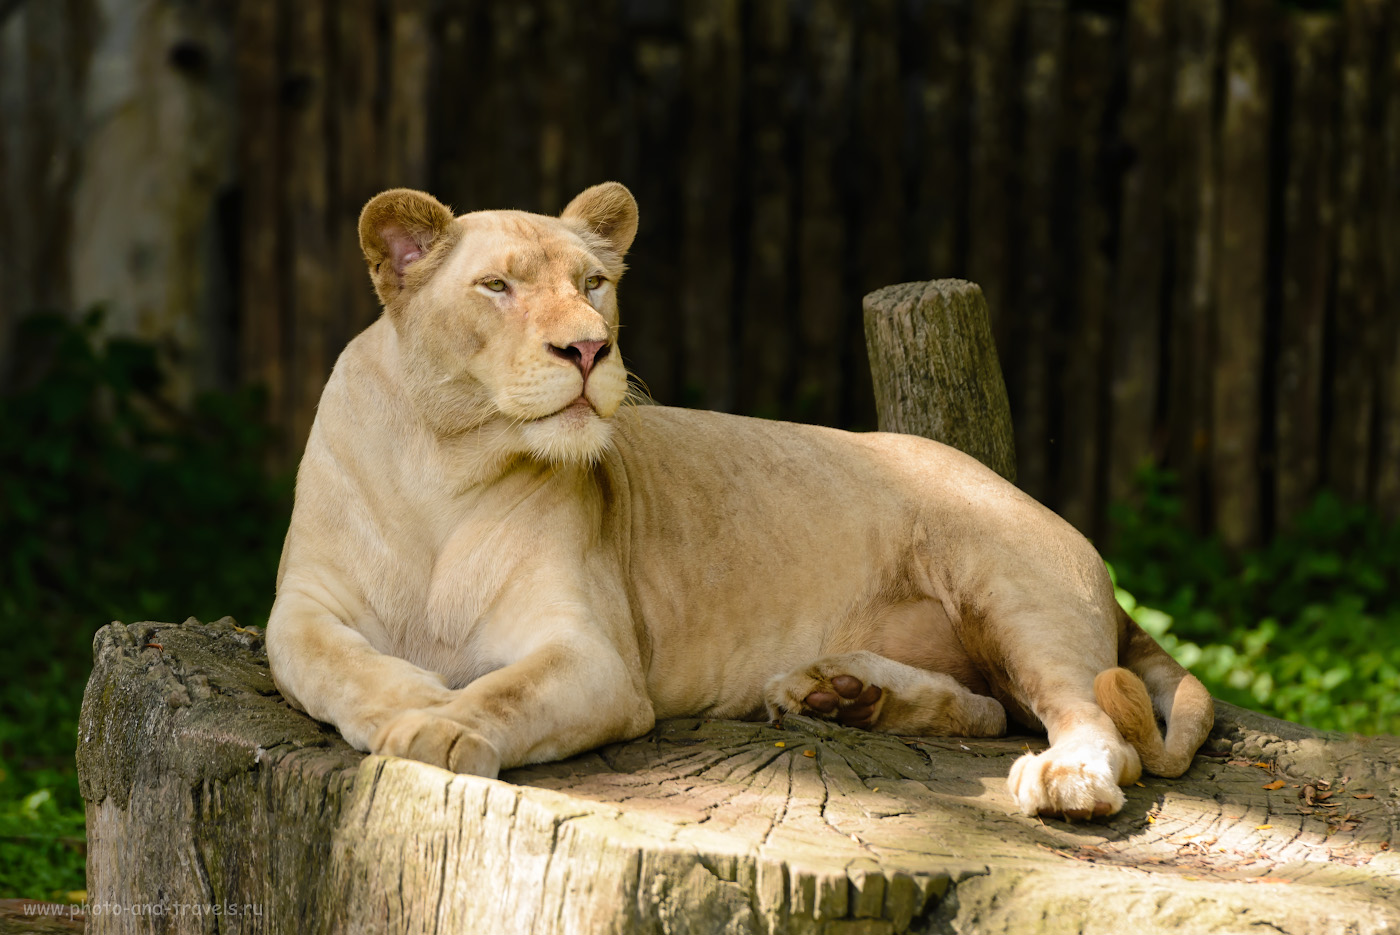 Фото 17. А вы знали, что на свете существуют белые львы? Съездите на экскурсию в зоопарк «Кхао Кхео» и привезите доказательства. 1/500, 3.5, 360, 200.